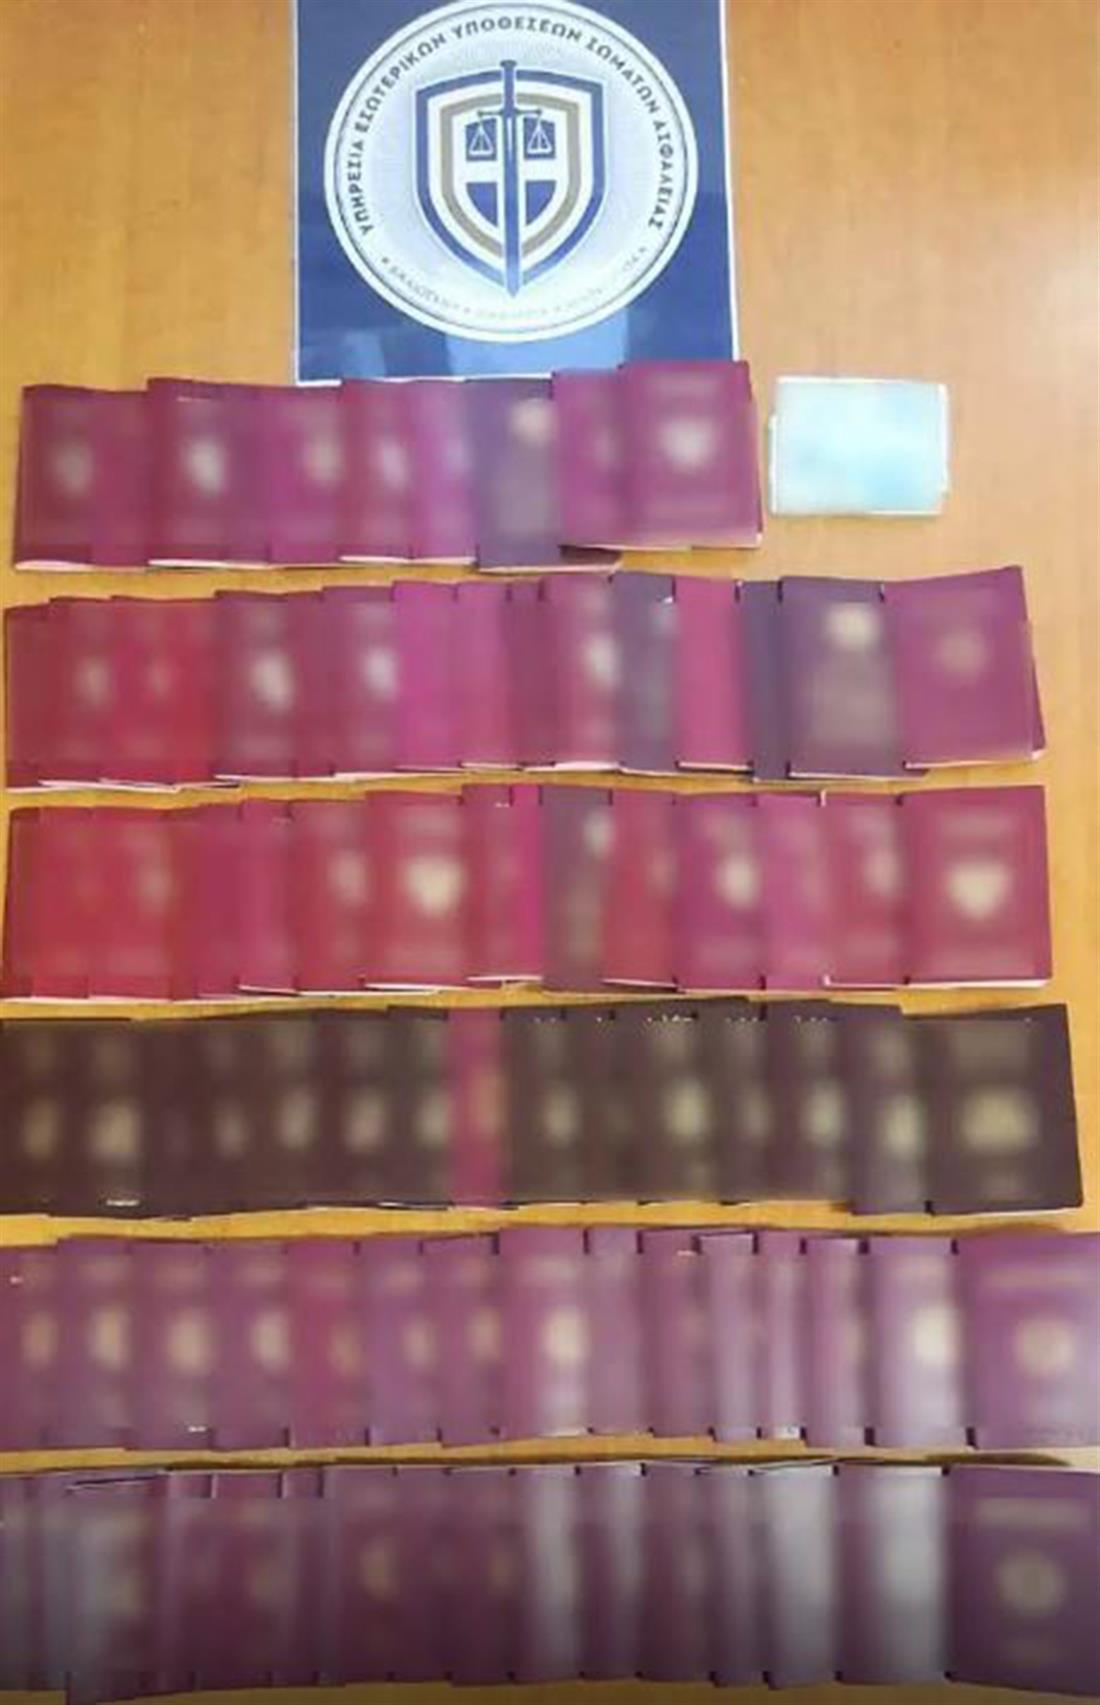 Βόρεια Ελλάδα - εγκληματική οργάνωση - παράνομη έκδοση ταυτοτήτων και διαβατηρίων